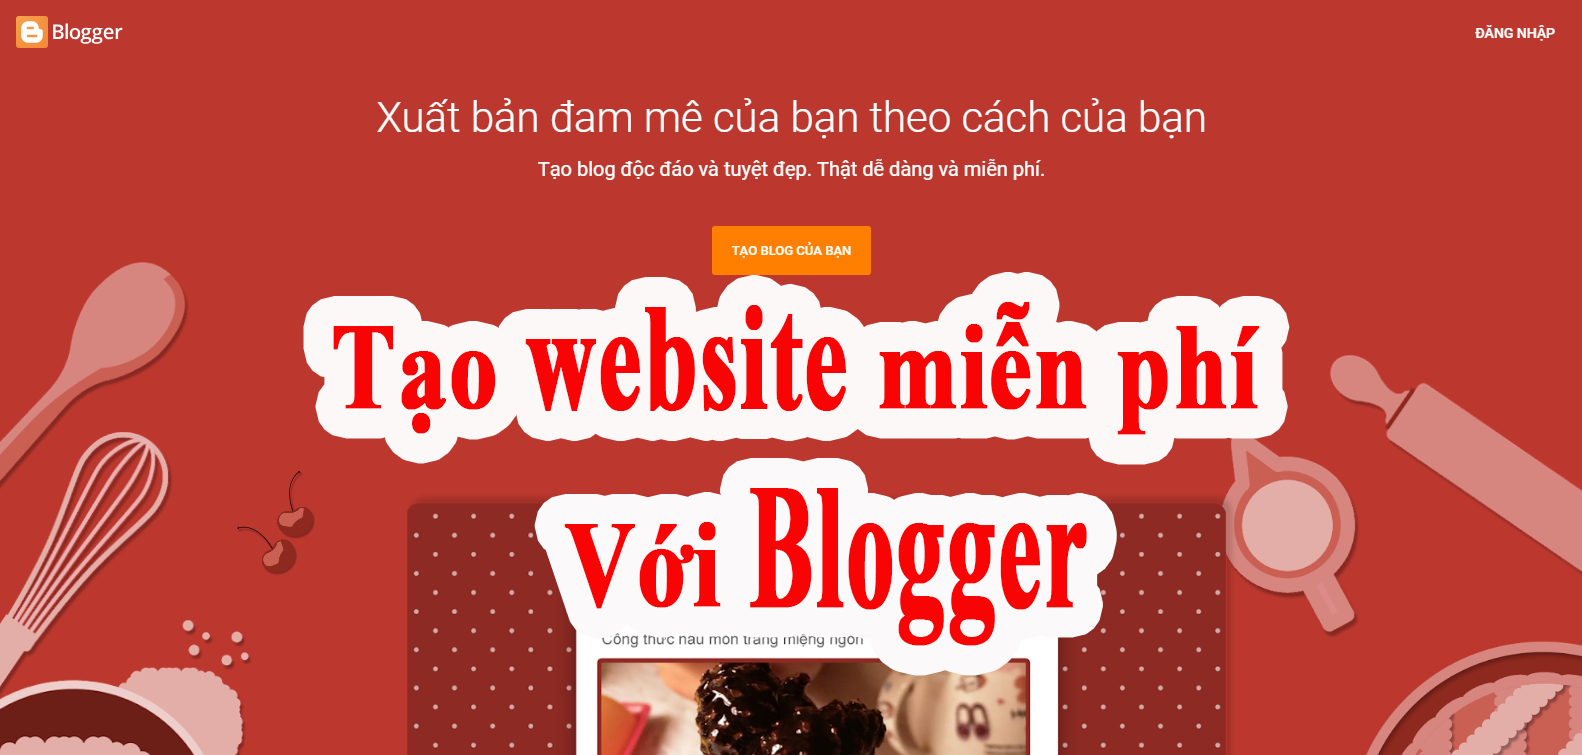 tao-website-mien-phi-bang-blogger